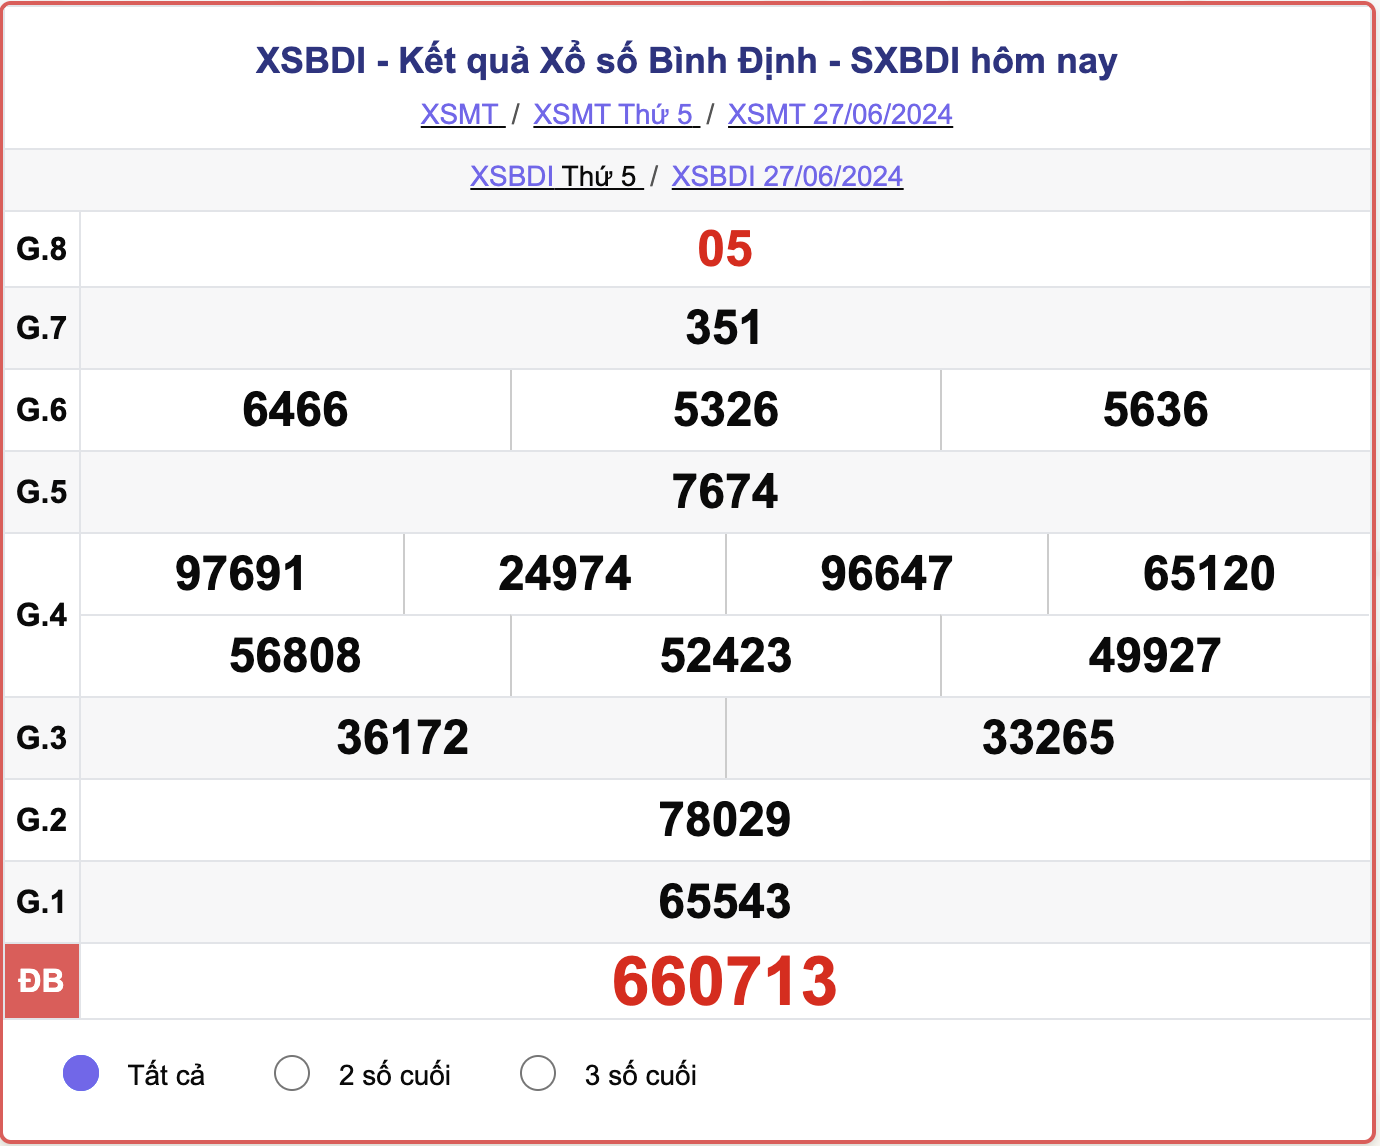 XSBDI 27/6, kết quả xổ số Bình Định hôm nay 27/6/2024.